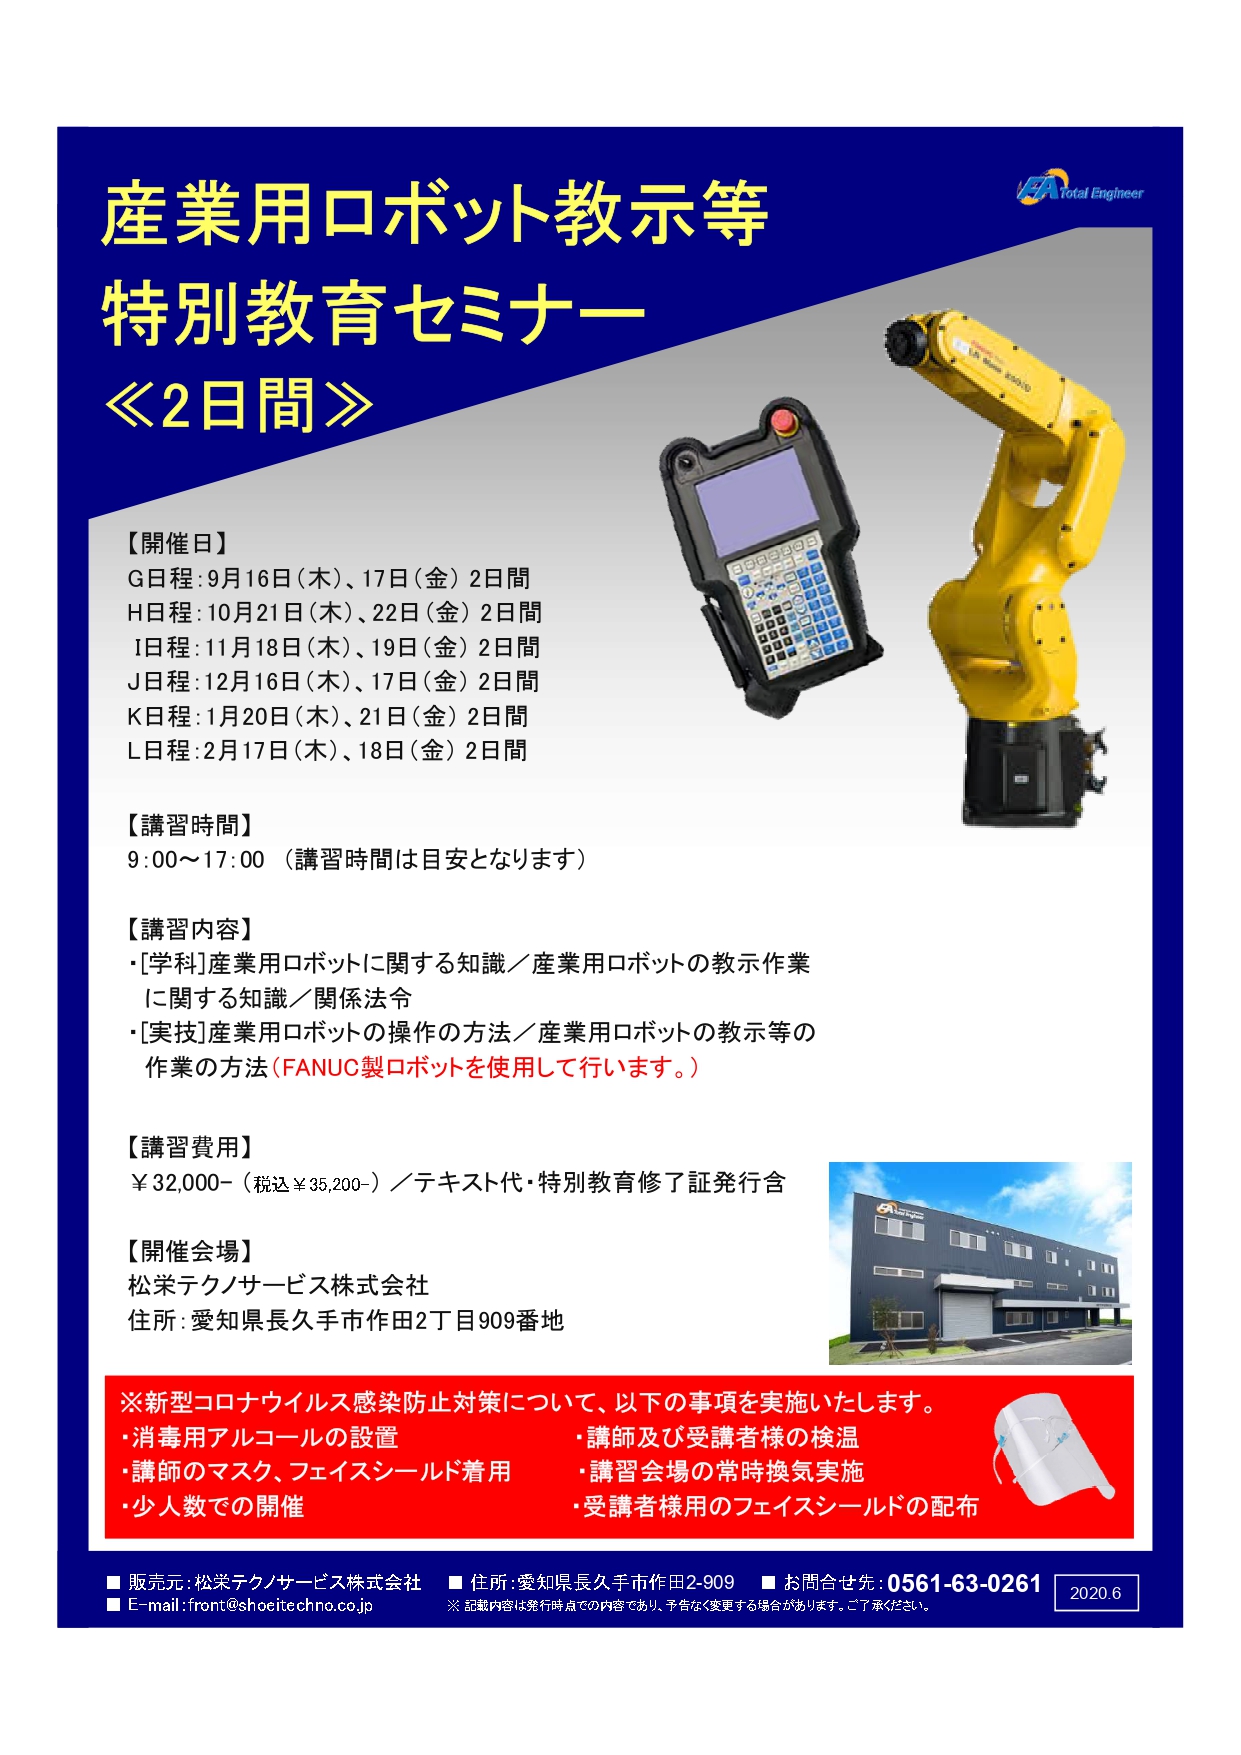 【愛知県開催】産業用ロボット特別教育（教示等）セミナー開催のお知らせ